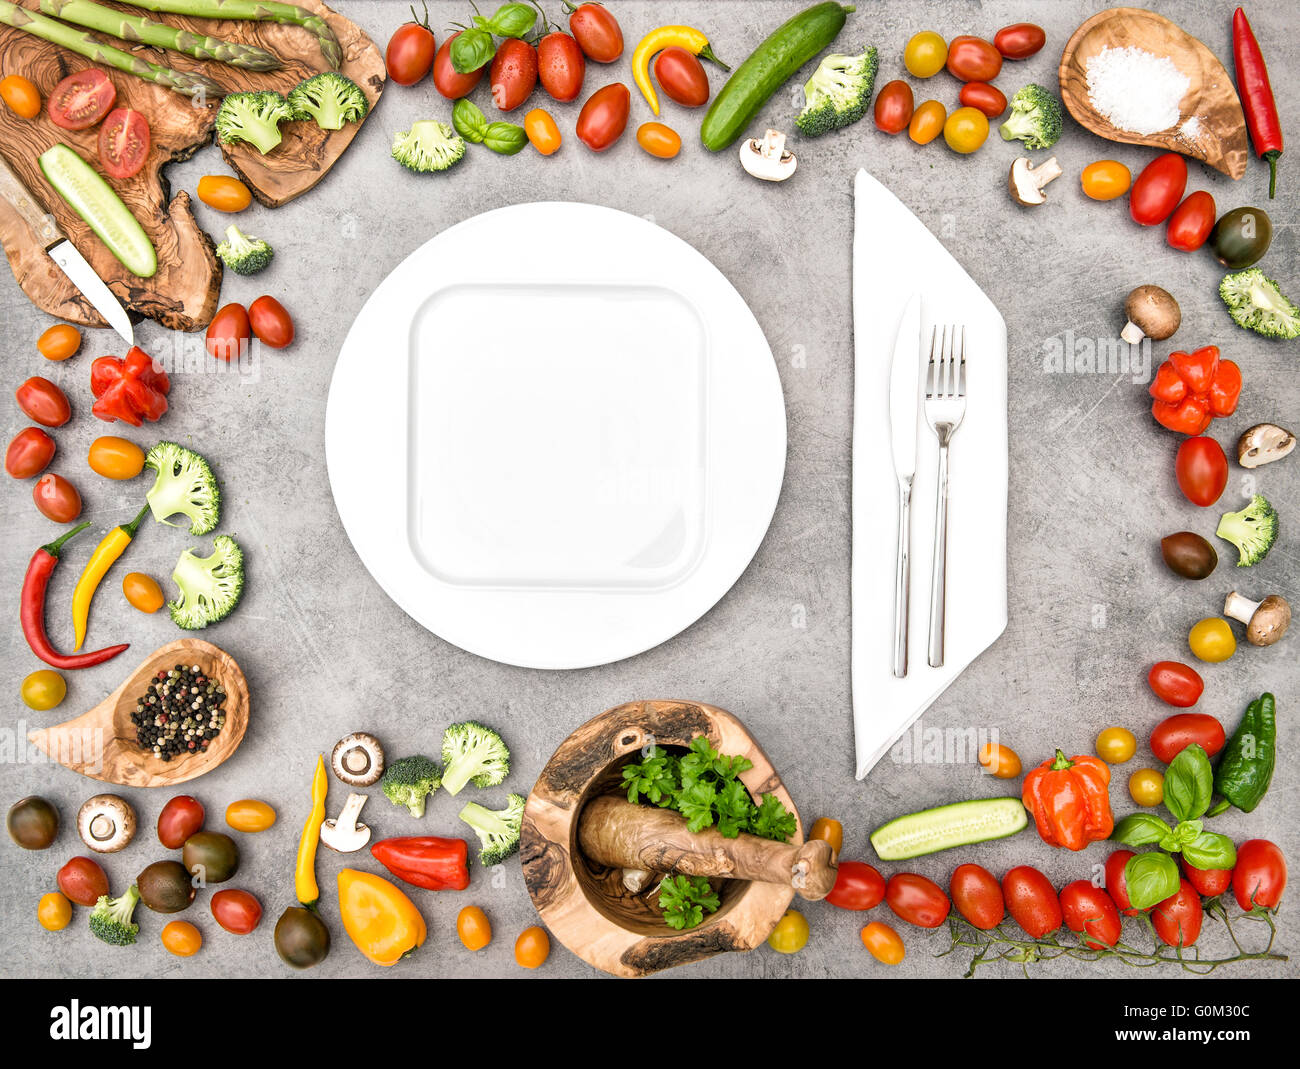 Table de cuisine avec des légumes frais. Concept d'aliments biologiques frais et sain. Mise à plat Banque D'Images